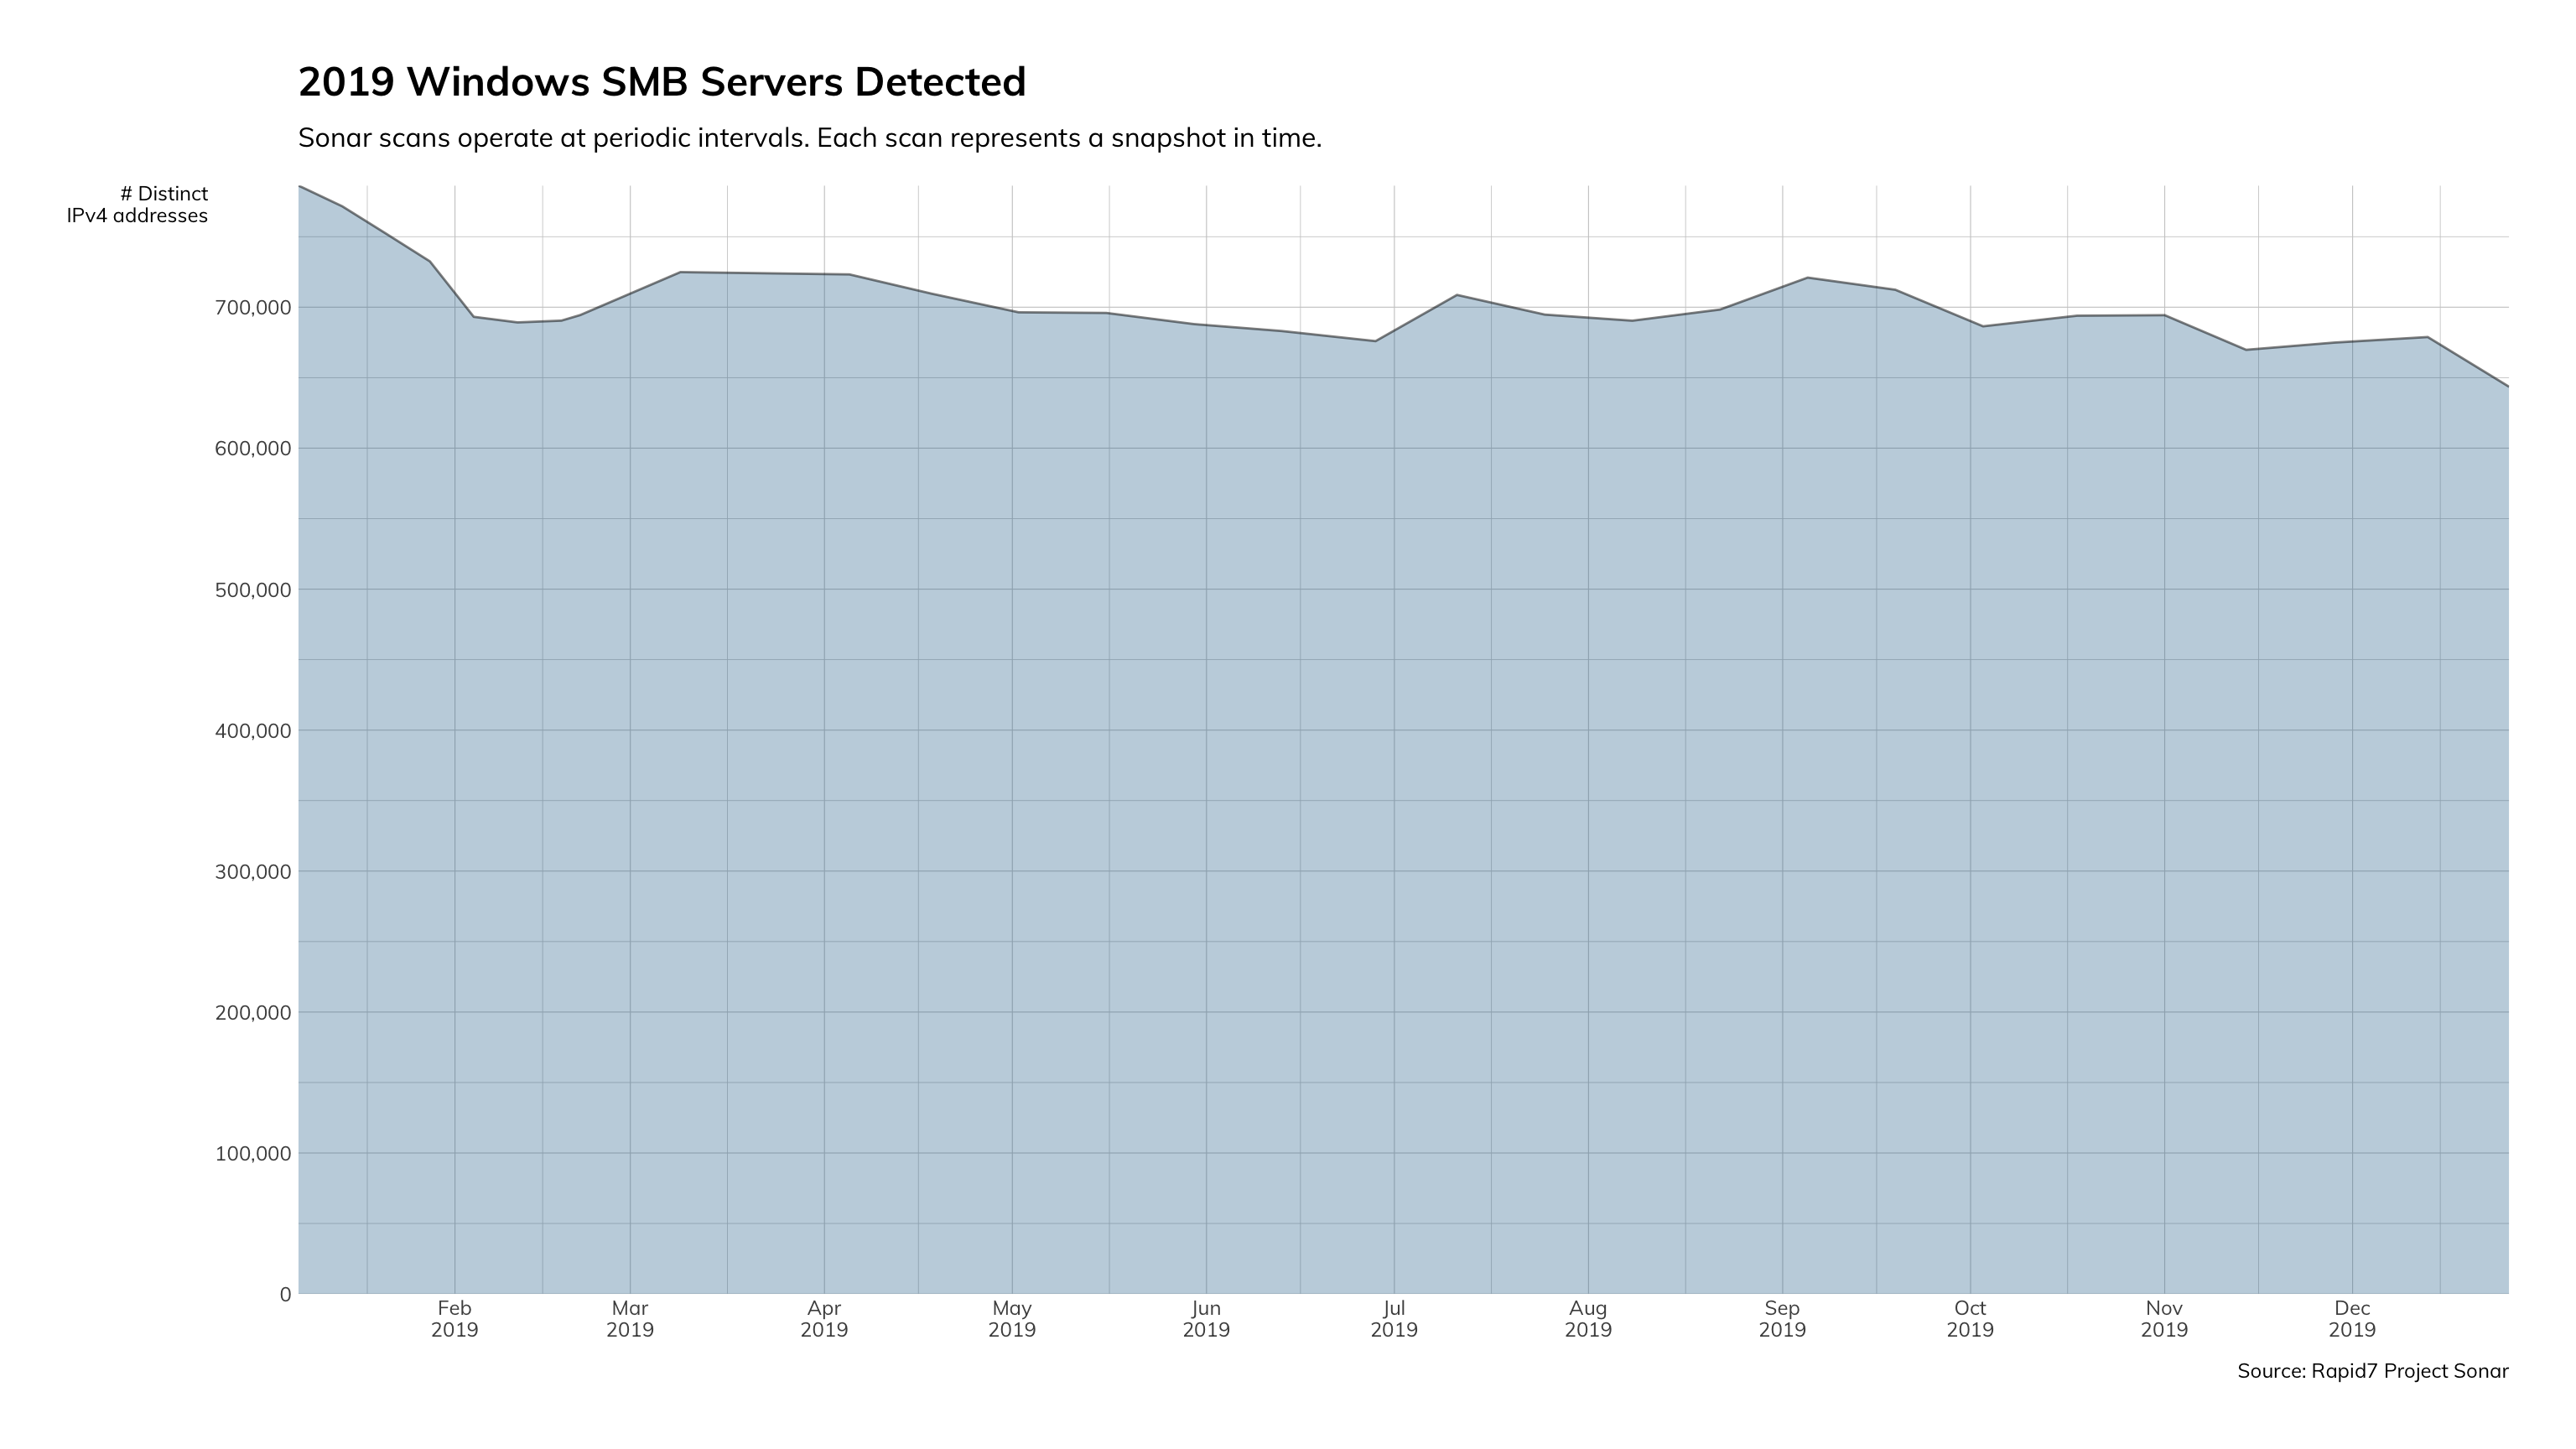 図2： 2019年のWindows SMBサーバー検知件数